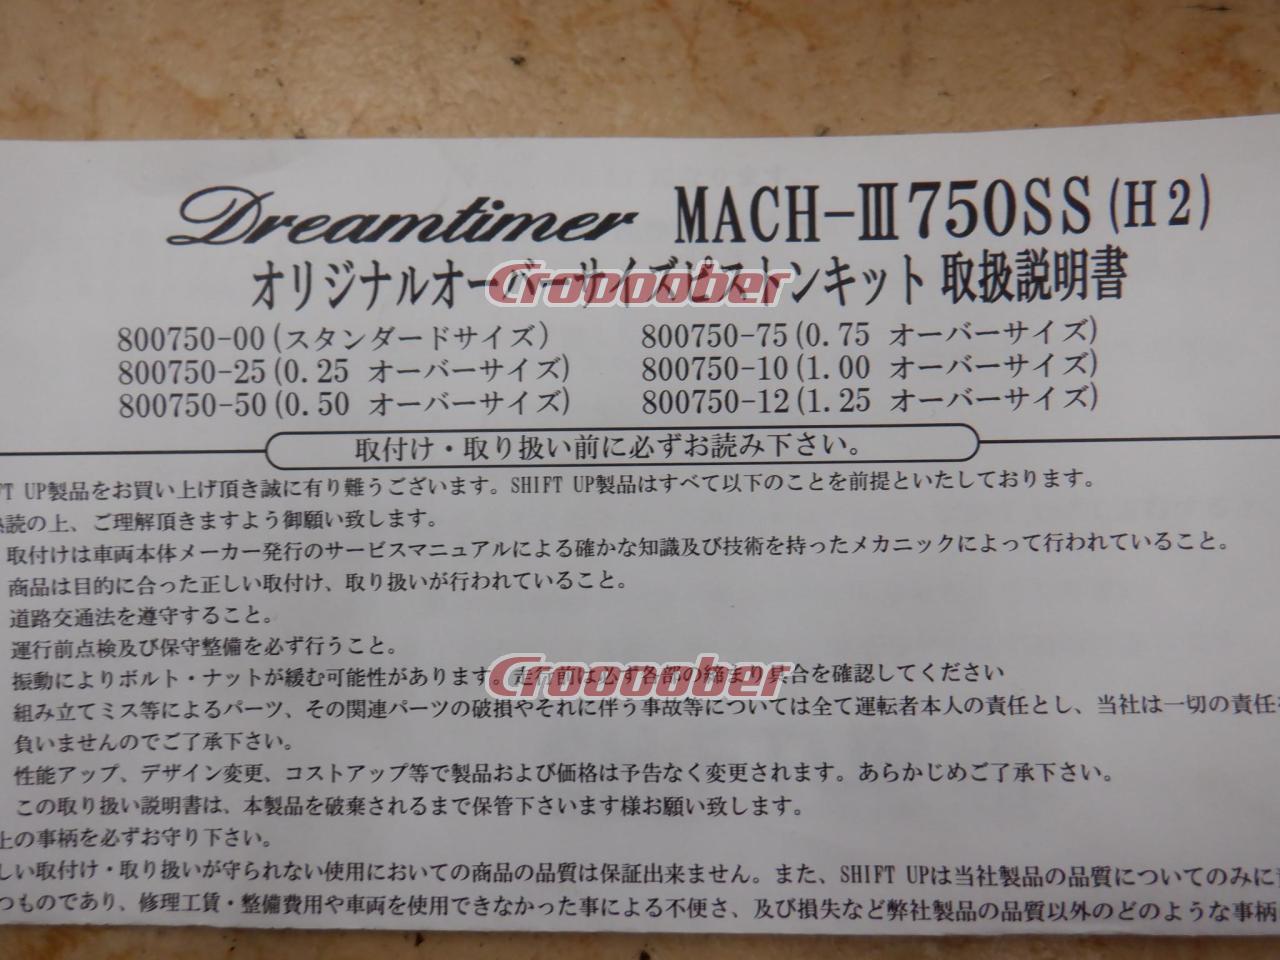 SHIFT UP(シフトアップ) DreamTimer 0.25オーバーサイズピストンキット 800750-25  MACH3/750SS(H2～H2-C)('71-'75) | エンジン・フレーム エンジンパーツ(二輪)パーツの通販なら |  Croooober(クルーバー)